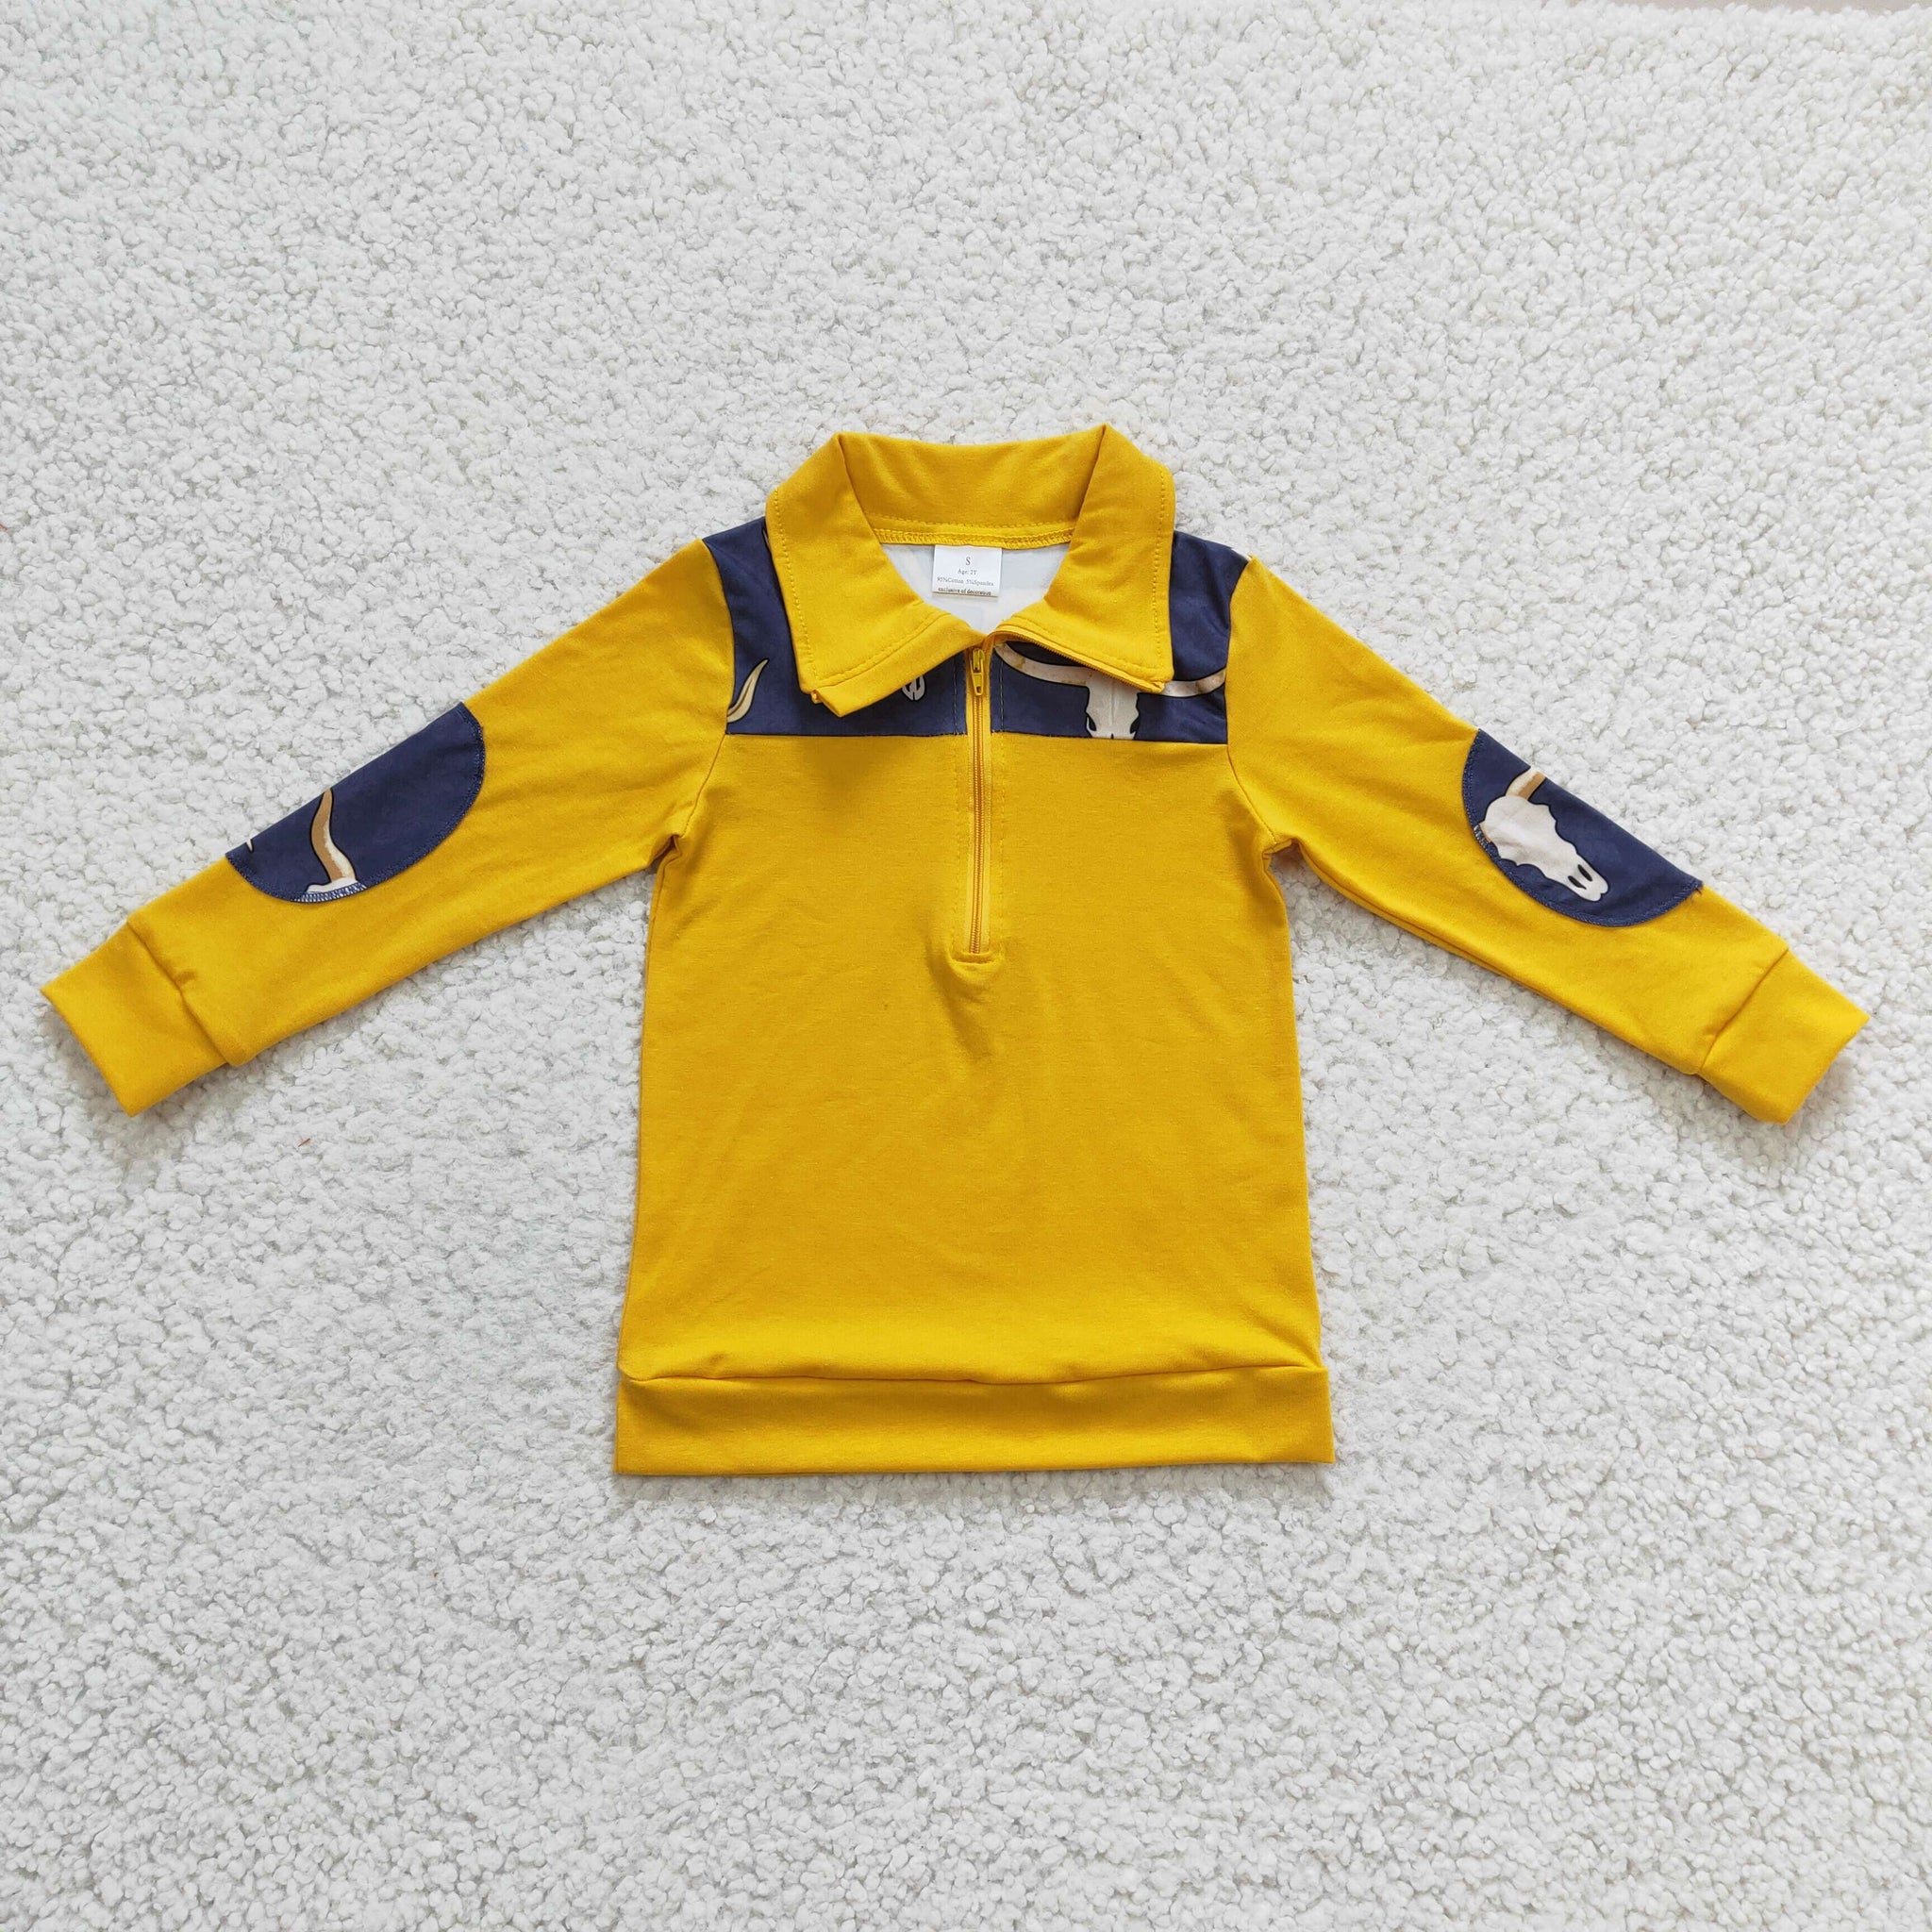 BT0124 kids clothes boys yellow zipper top shirt